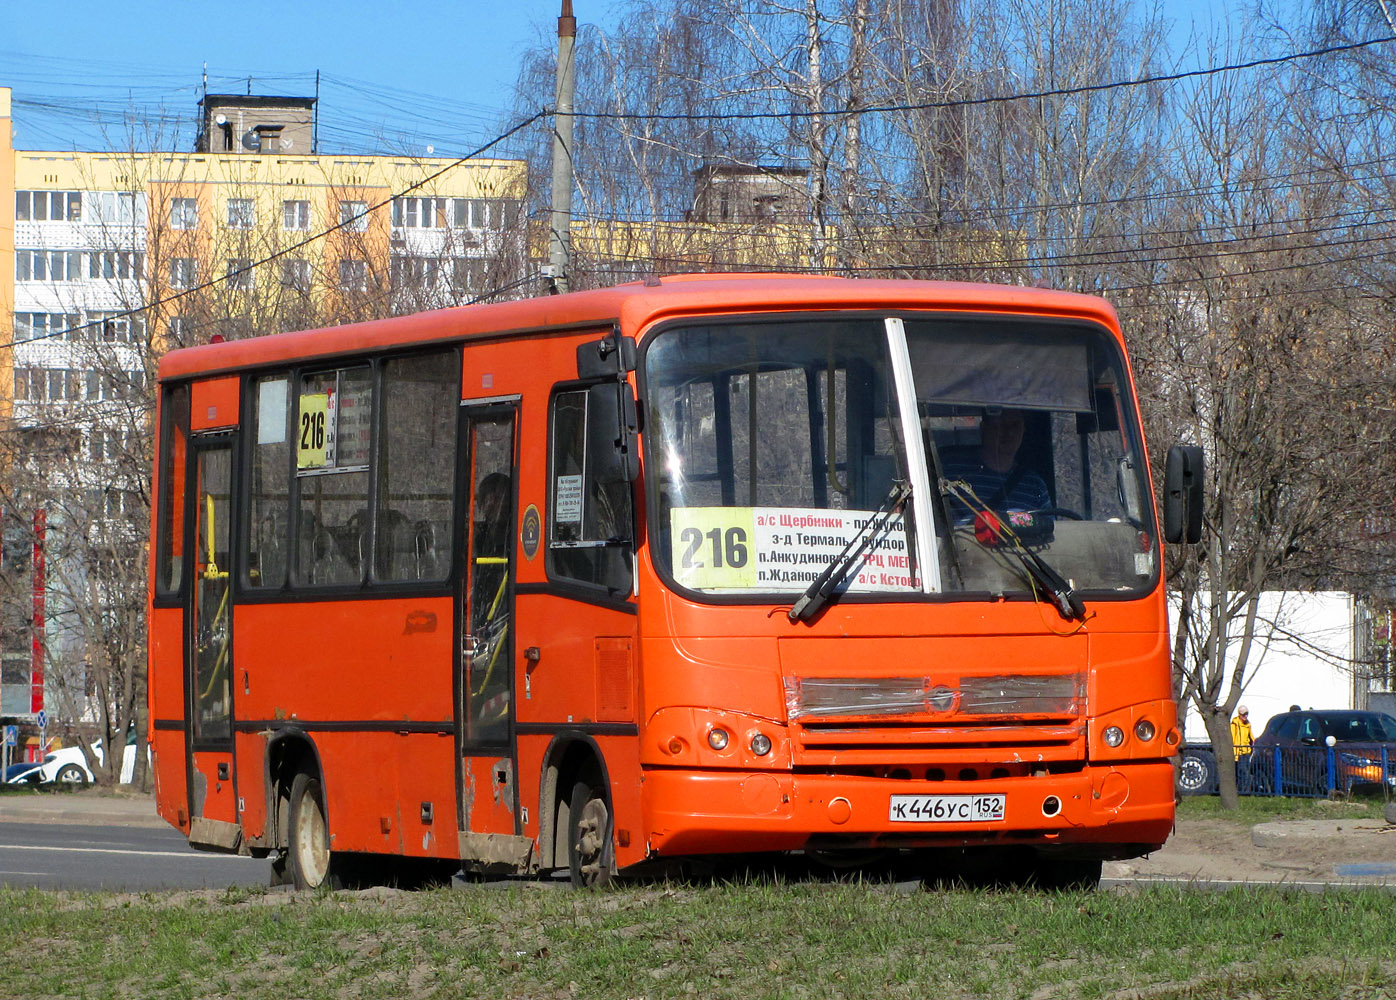 Nizhegorodskaya region, PAZ-320402-05 Nr. К 446 УС 152